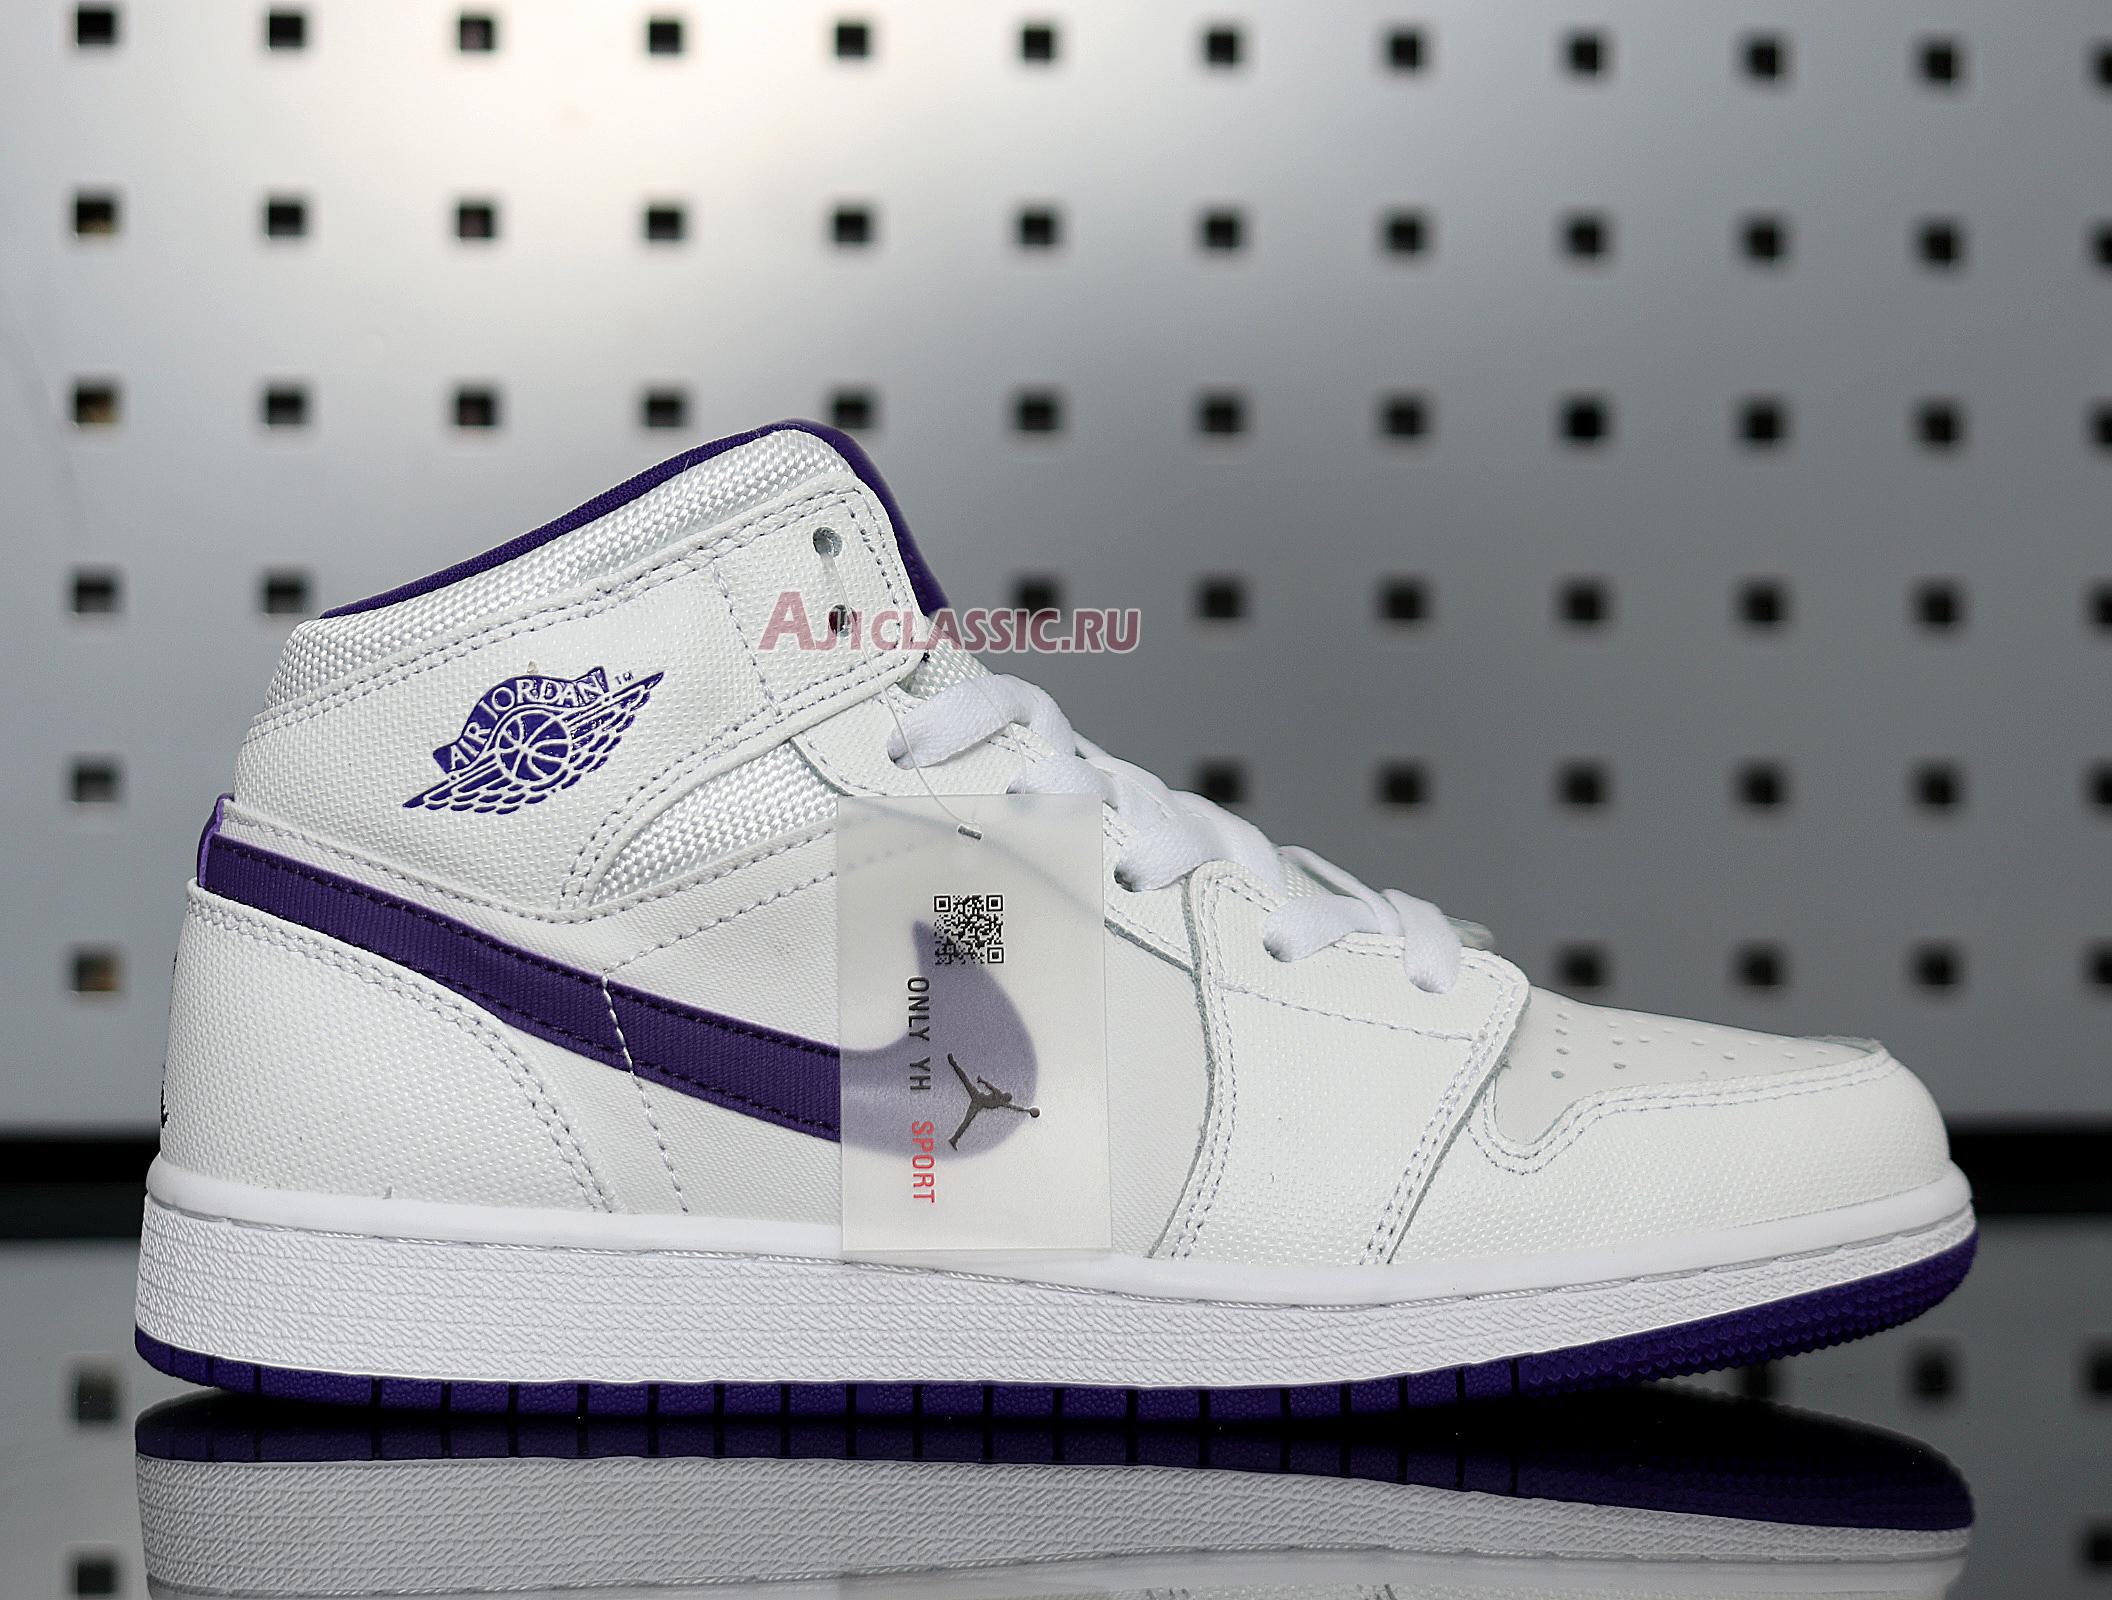 Air Jordan 1 Retro High "White Court Purple" 332148-137